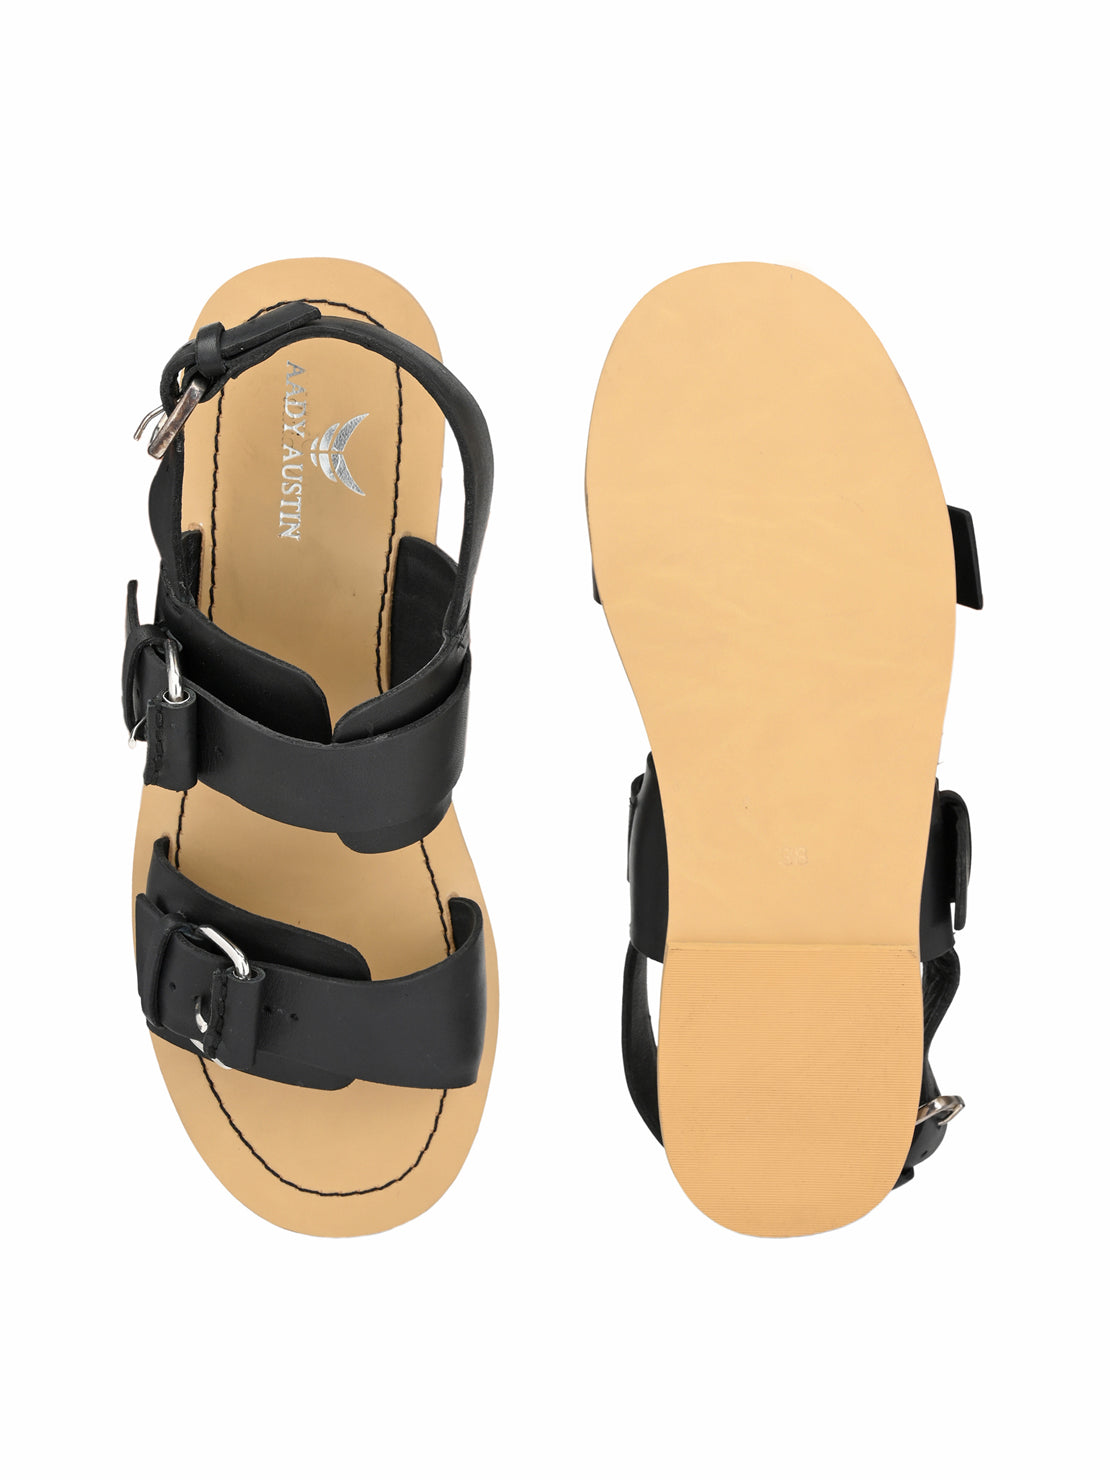 Aady Austin Women Black Open Toe Buckle Starp Flats Sandals (AUSF19023)